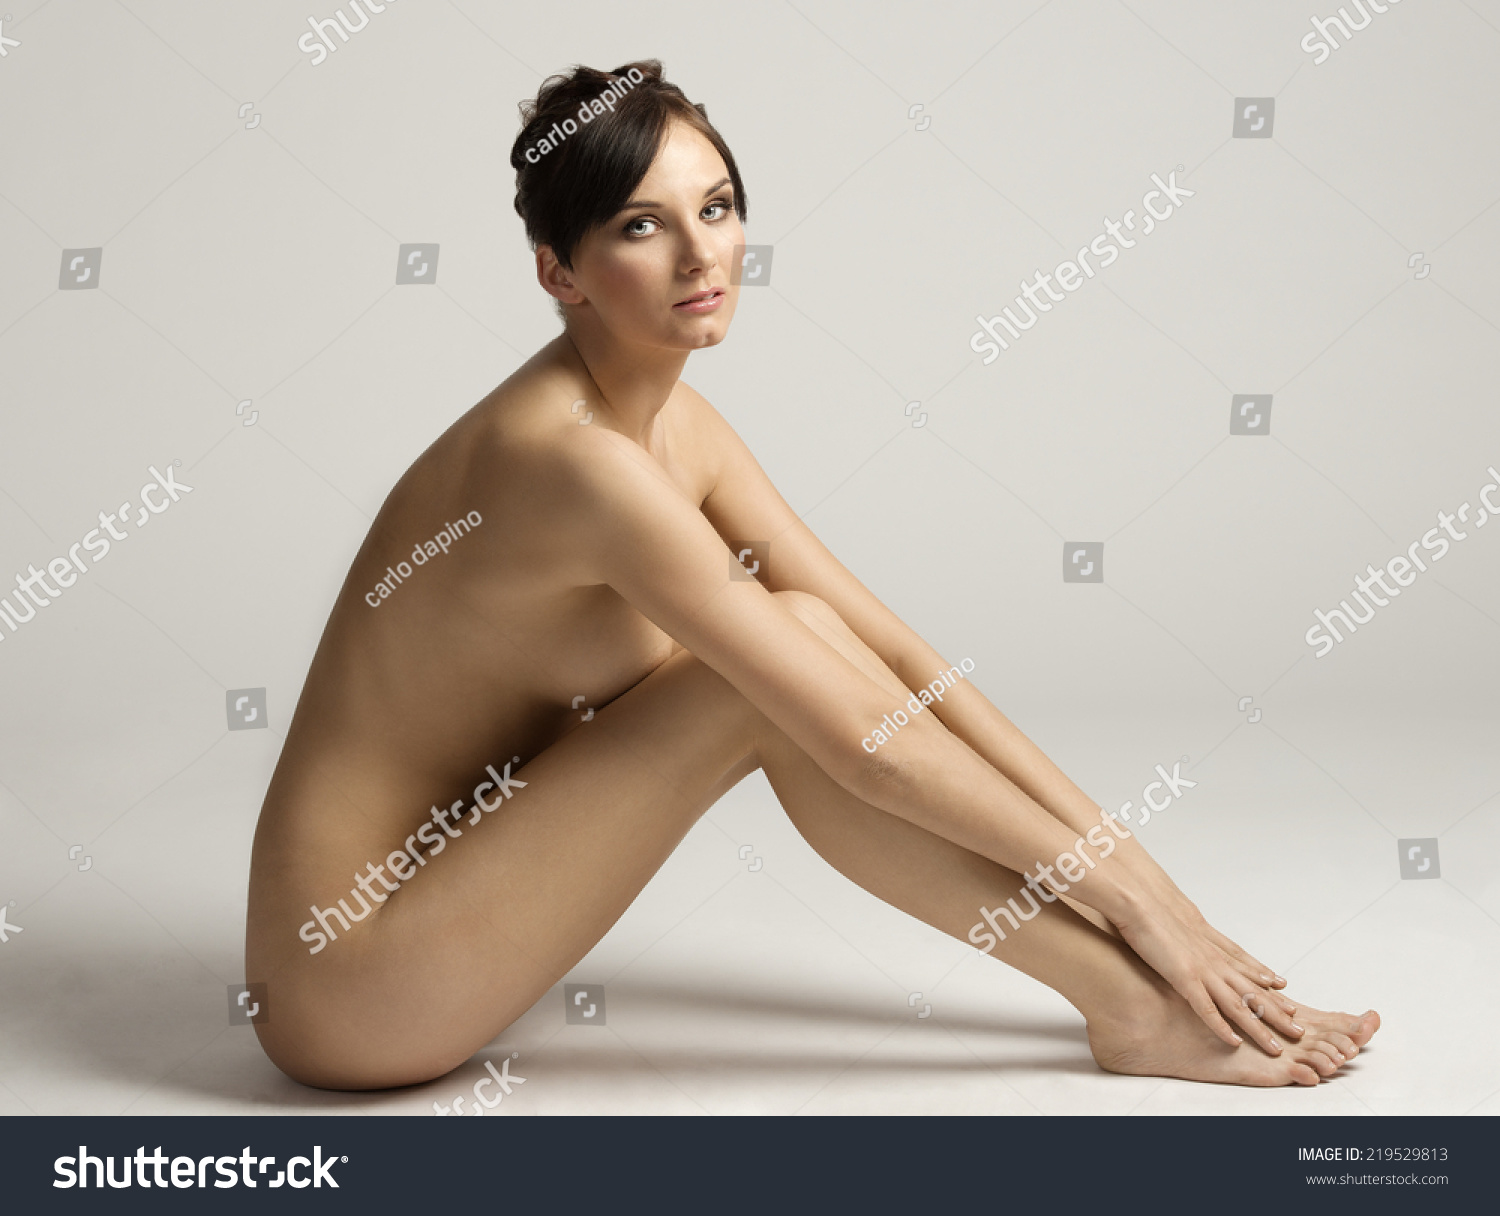 Bermese naked nude blog